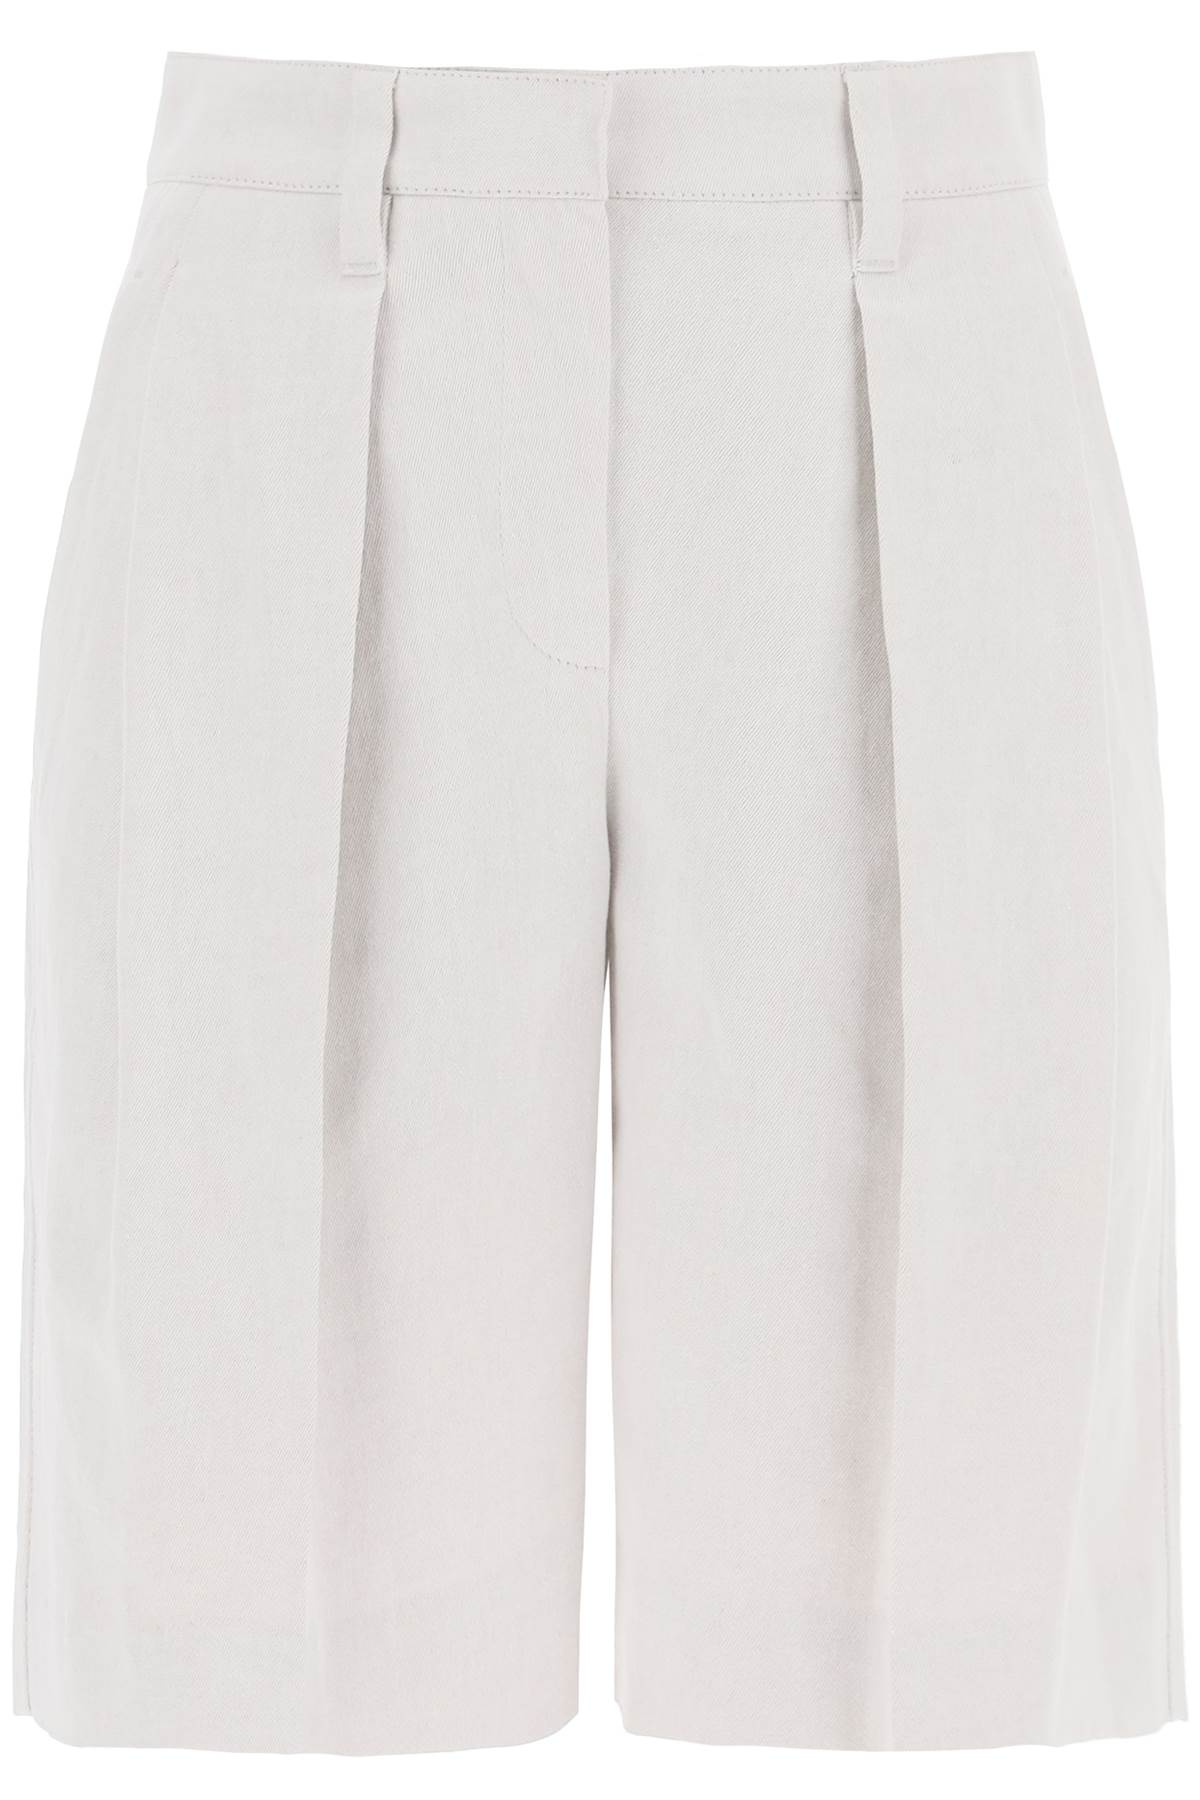 Shop Brunello Cucinelli Cotton-linen Shorts